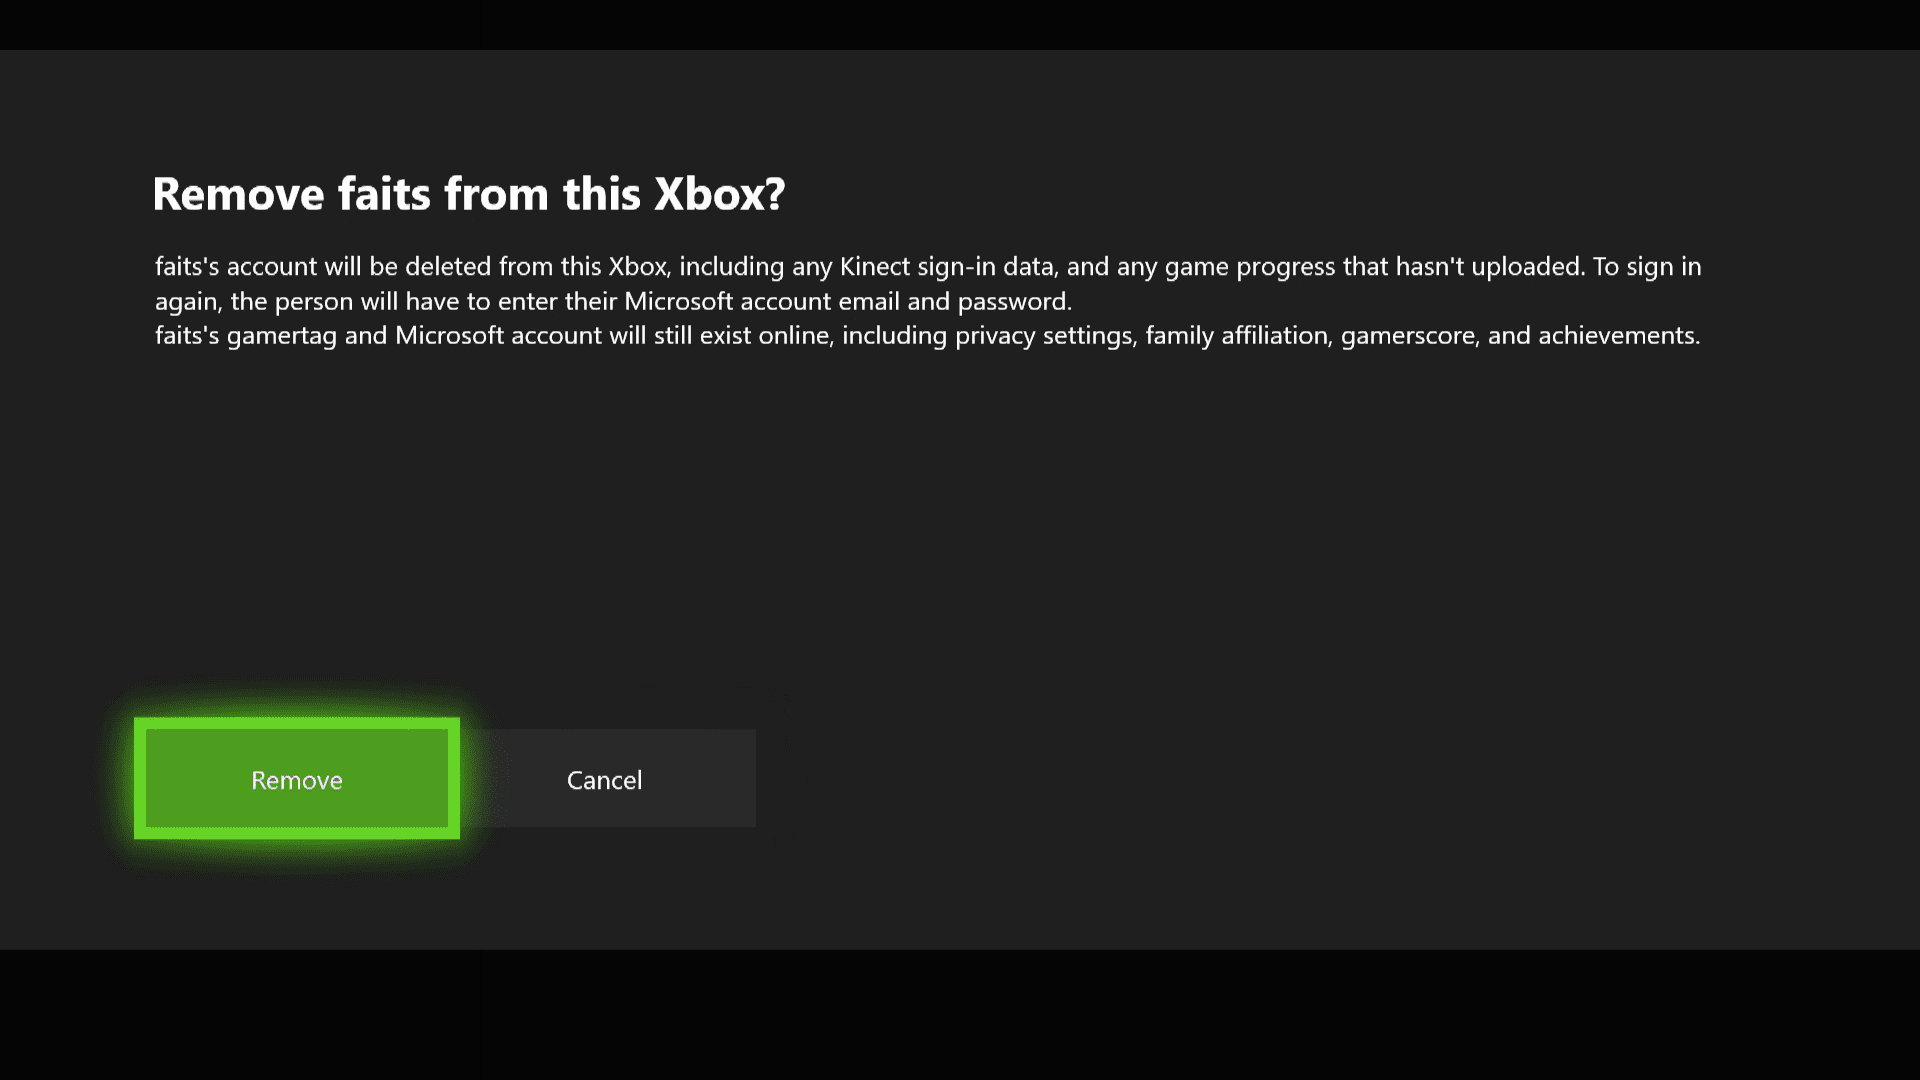 Скриншот экрана подтверждения удаления профиля на Xbox One.